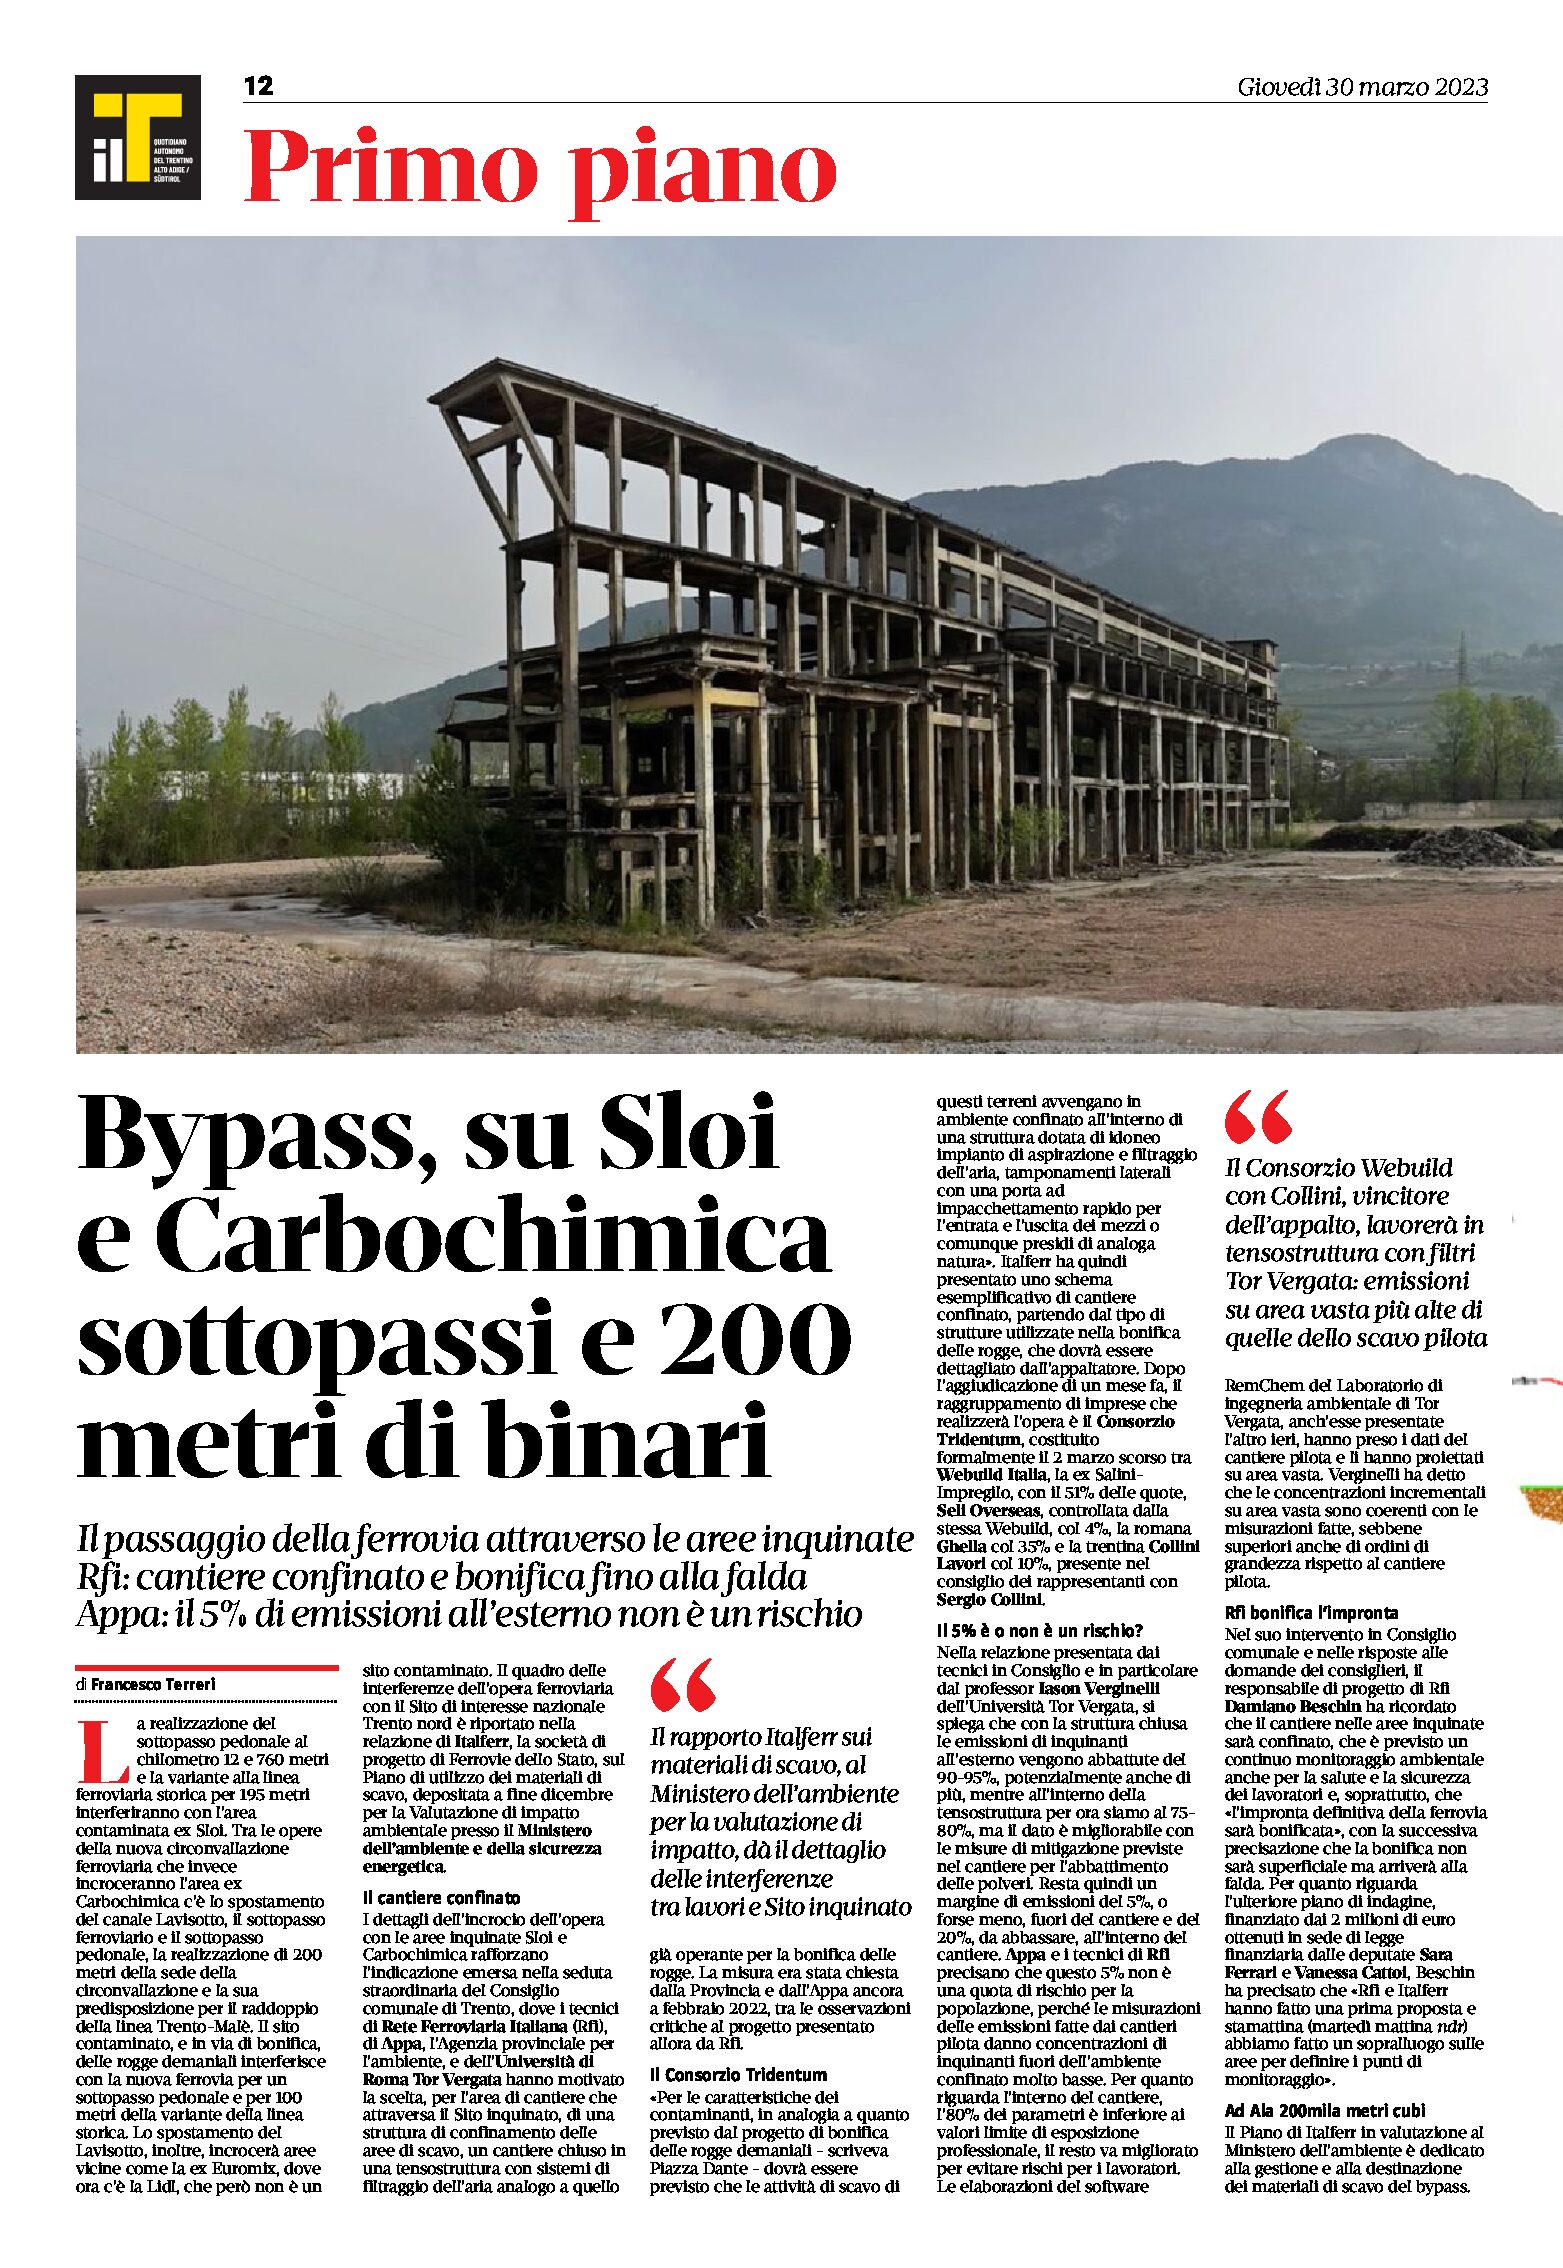 Trento, bypass: su Sloi e Carbochimica sottopassi e 200 metri di binari